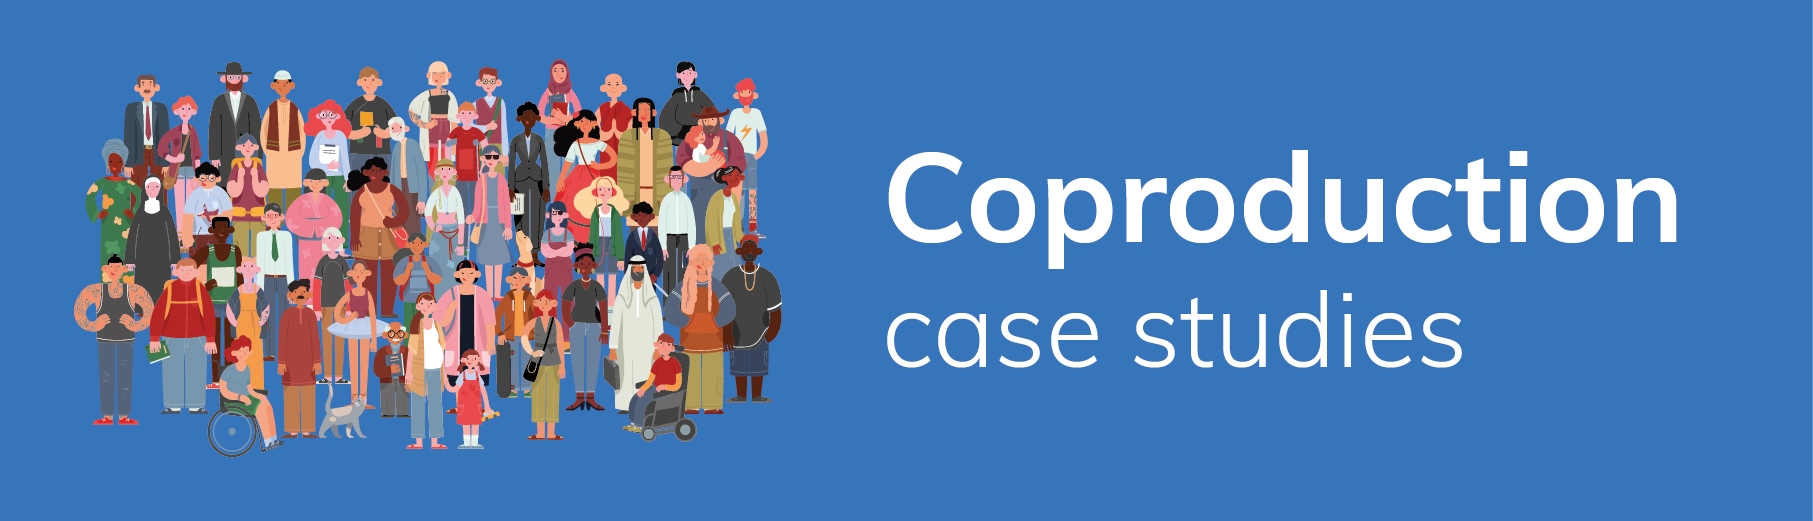 Coproduction case studies web page 01